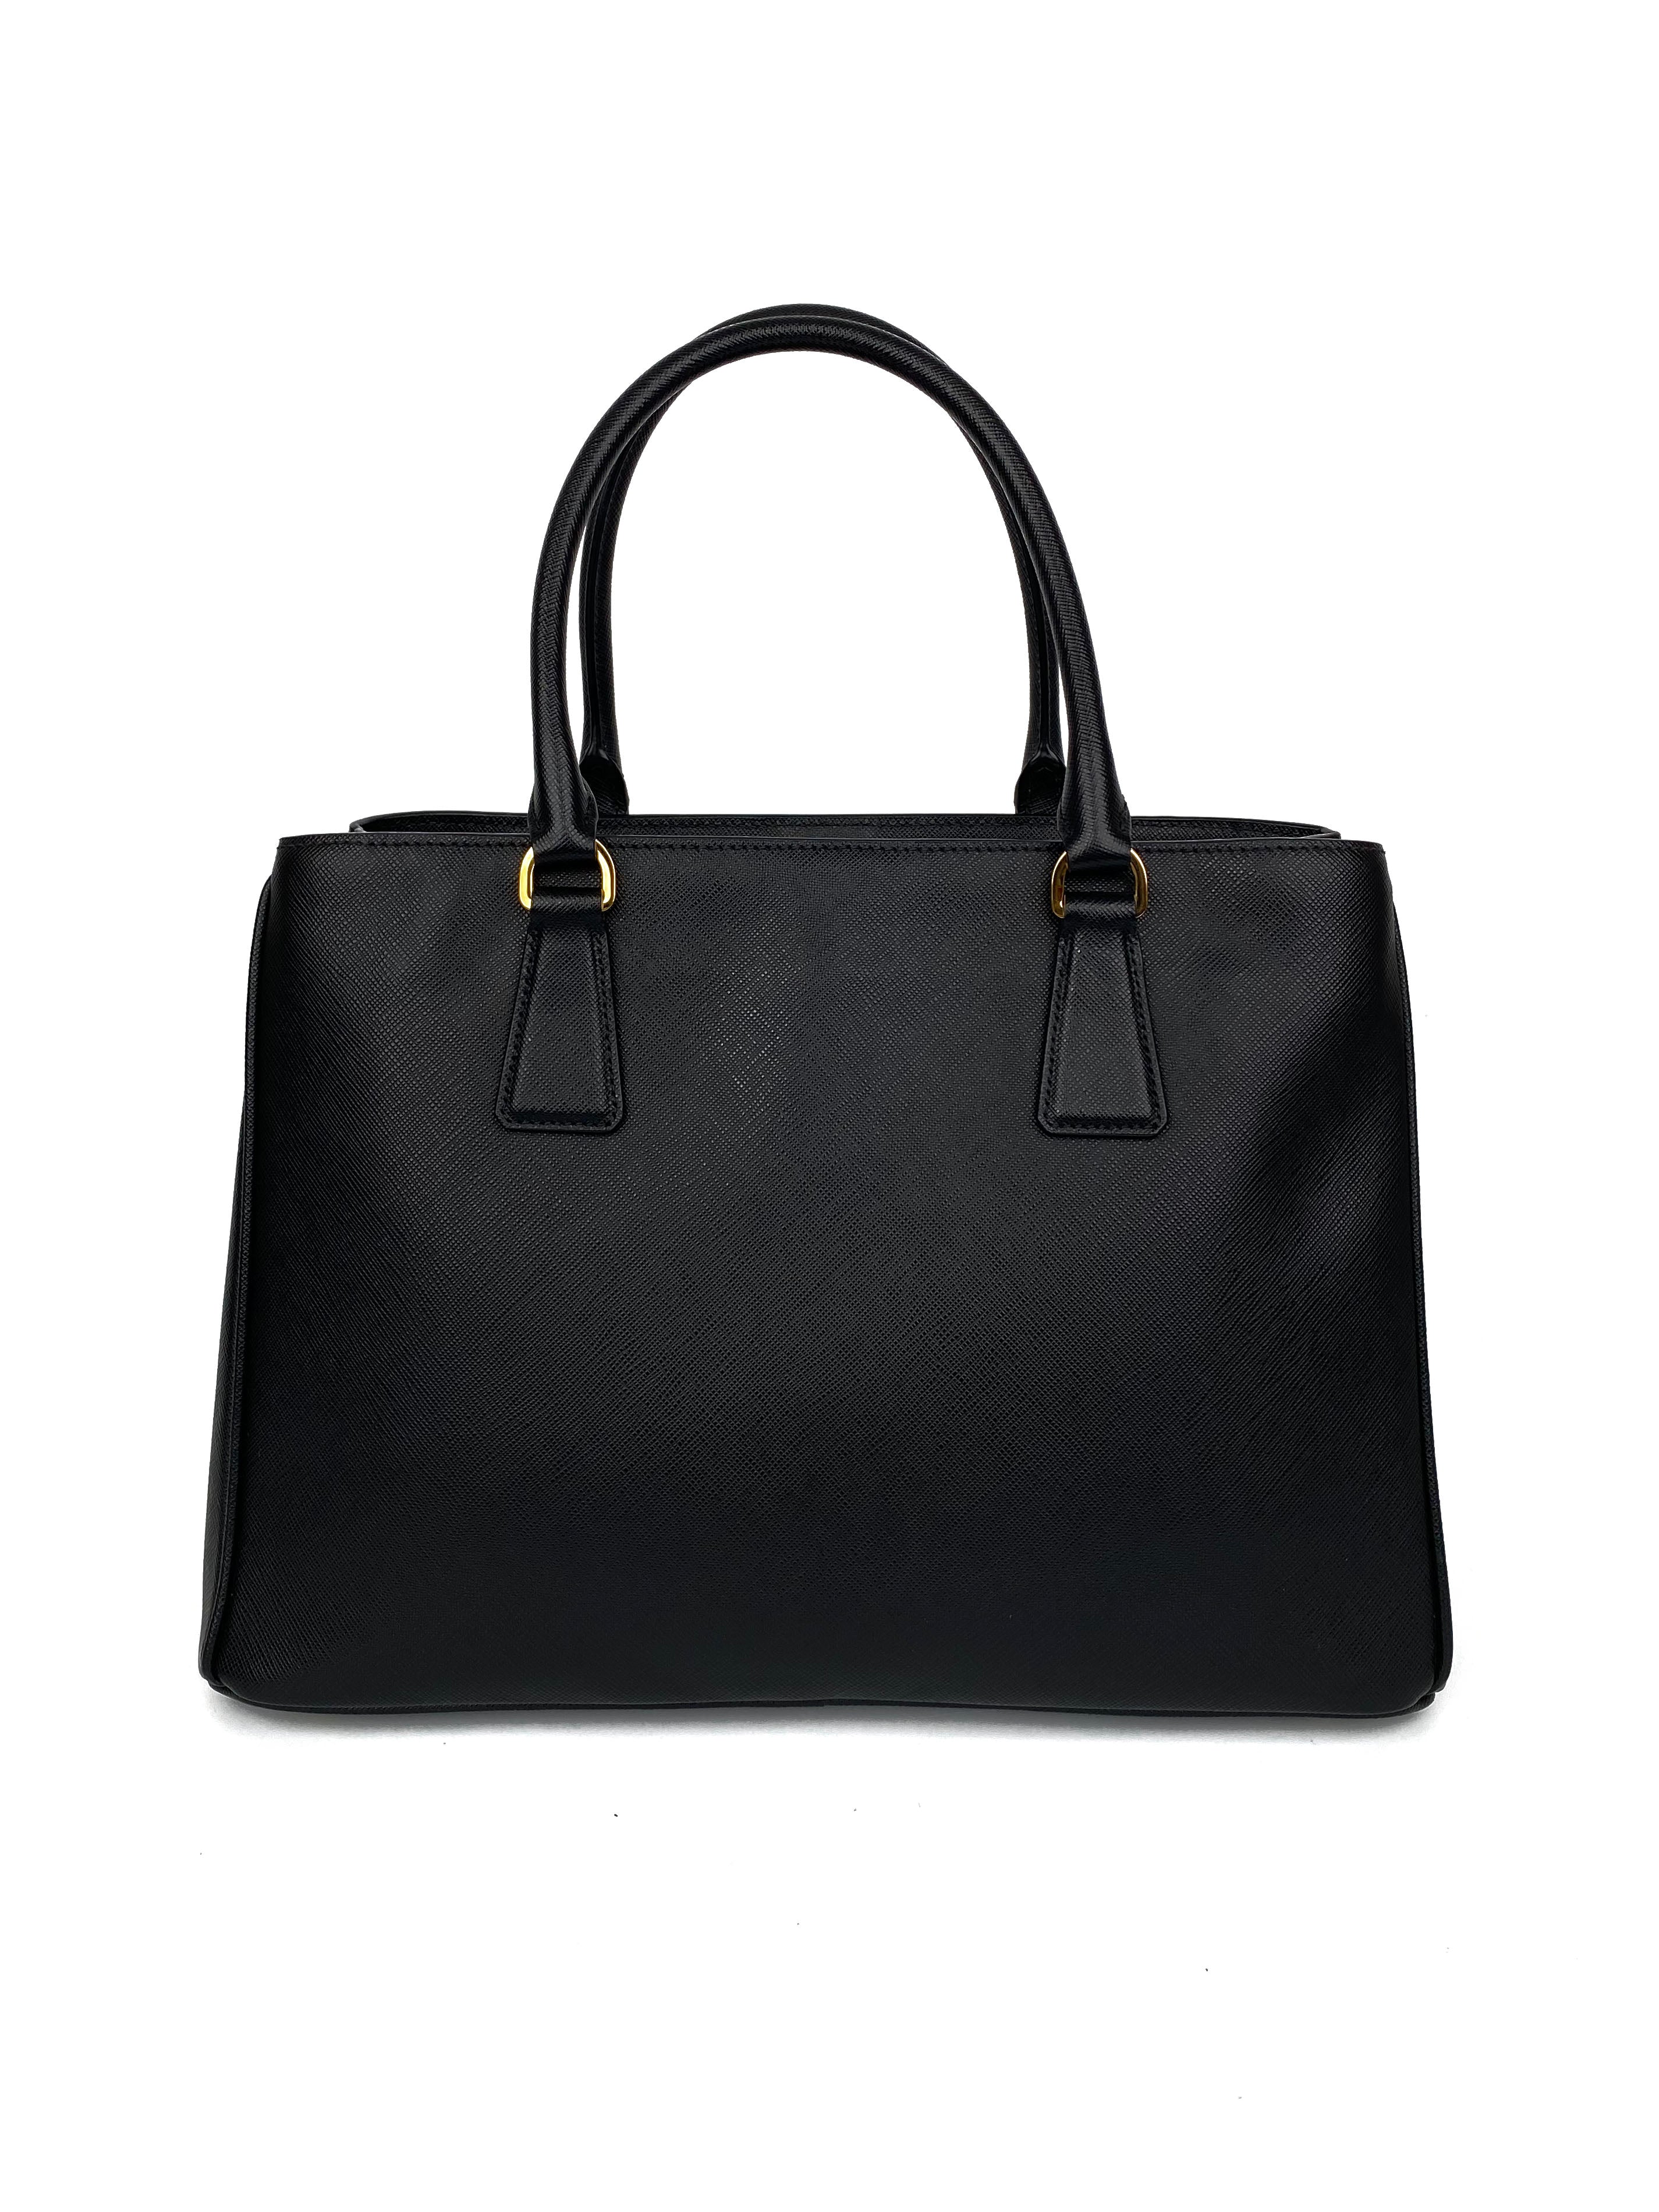 Prada Black Medium Double Zip Lux Tote Bag